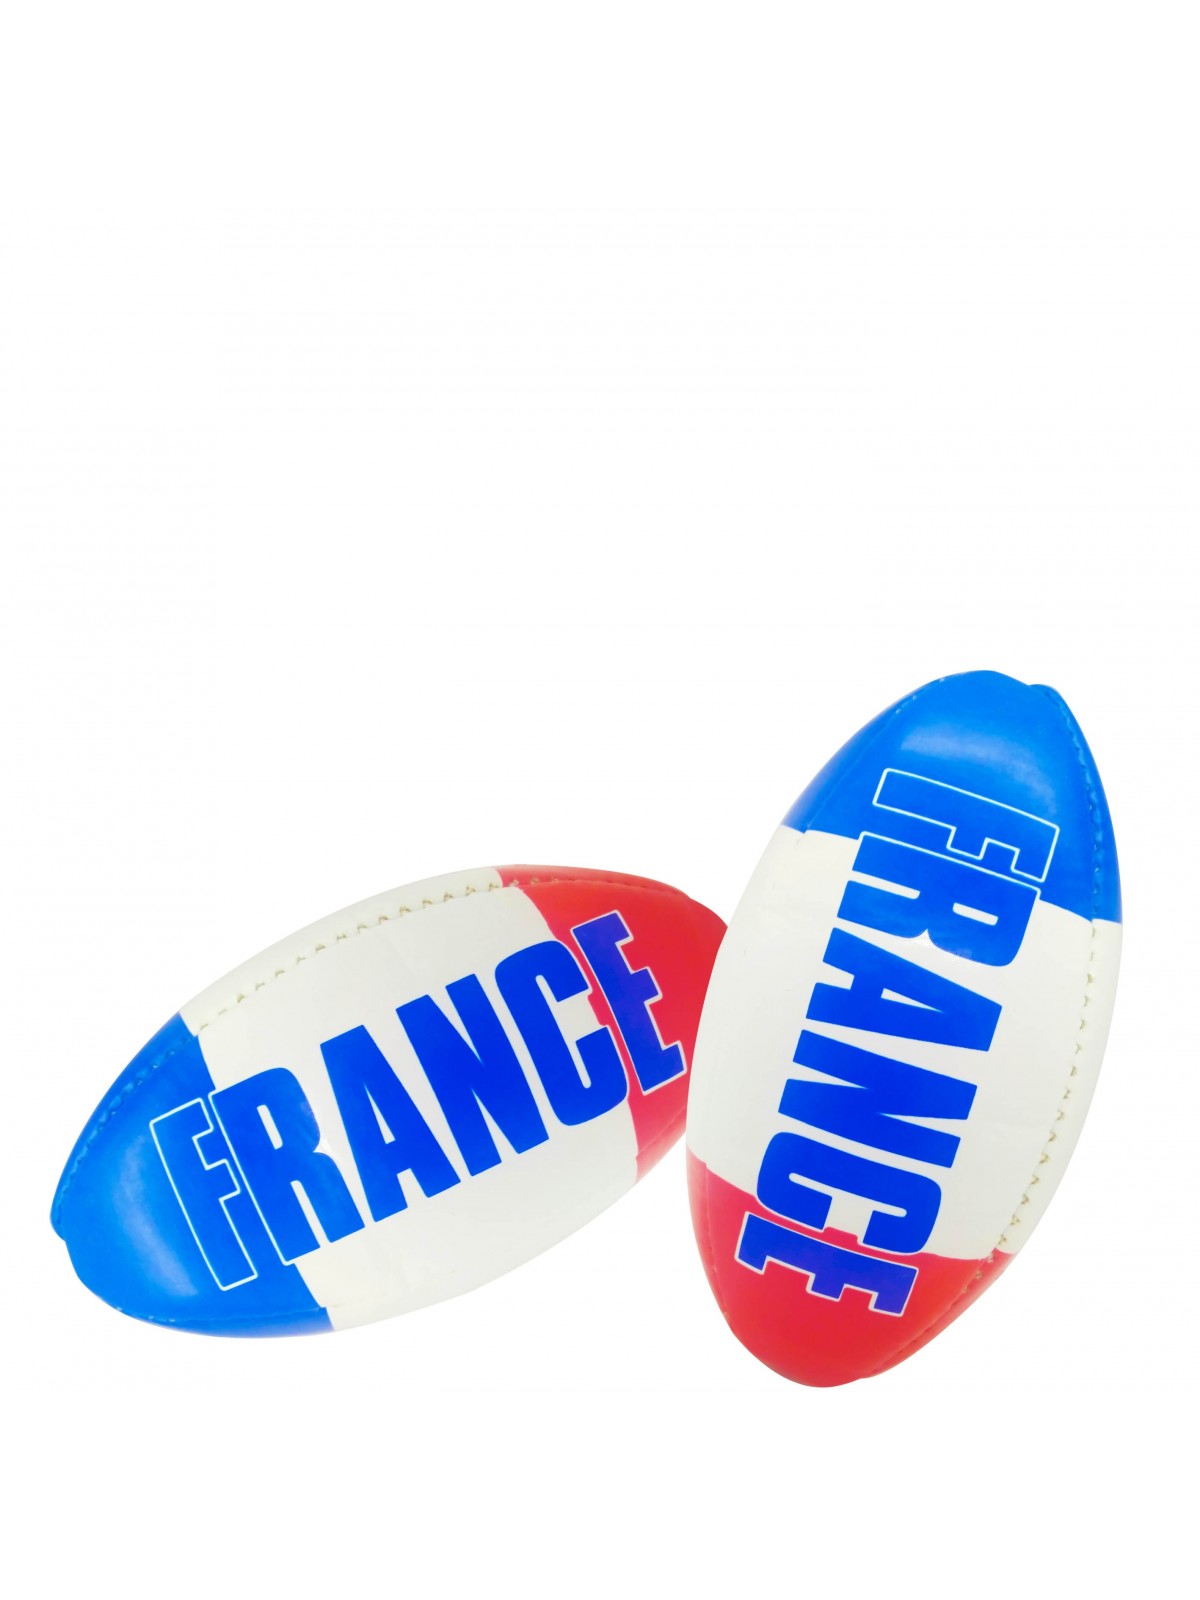 52-002 Mini ballon de rugby en cuir PVC personnalisé